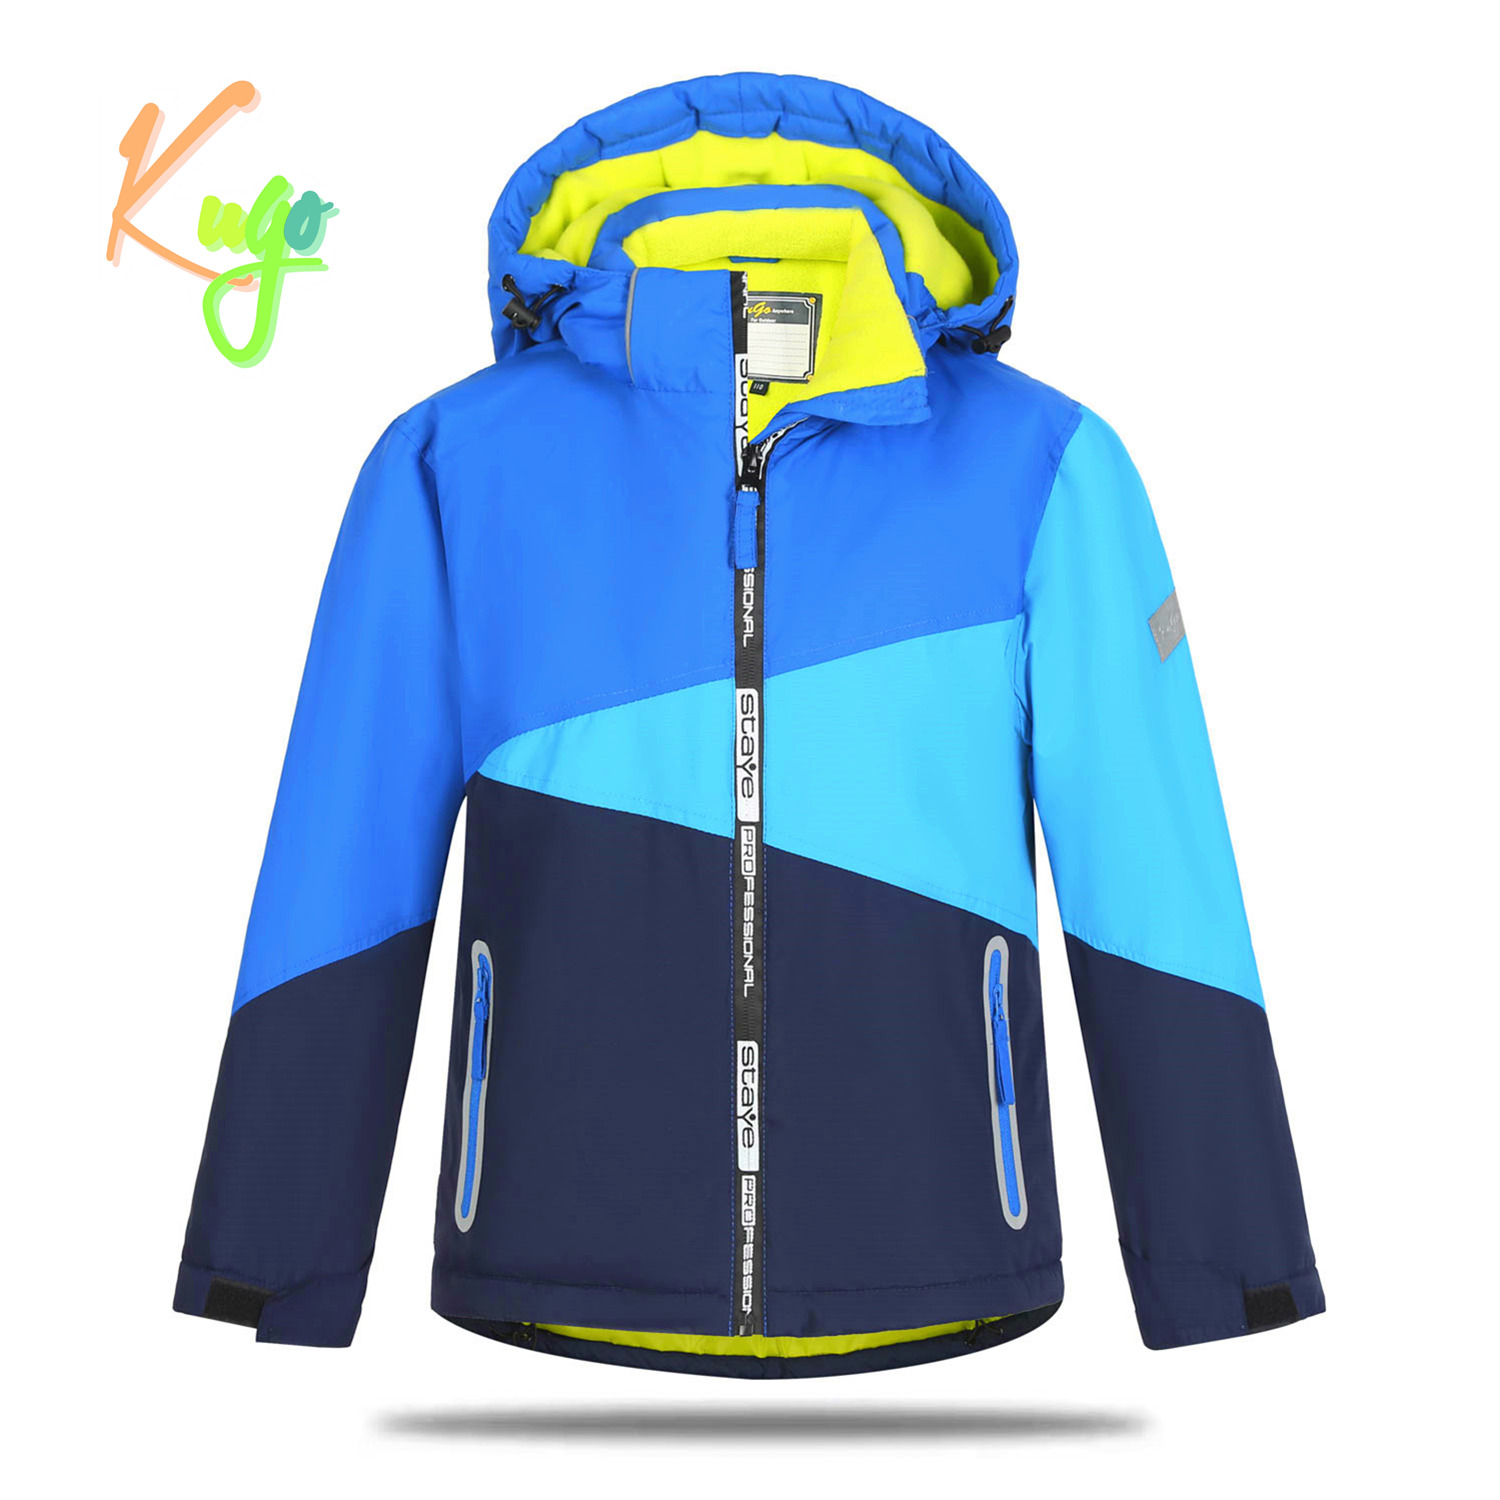 Chlapecká zimní bunda - KUGO PB7352, modrá Barva: Modrá, Velikost: 98